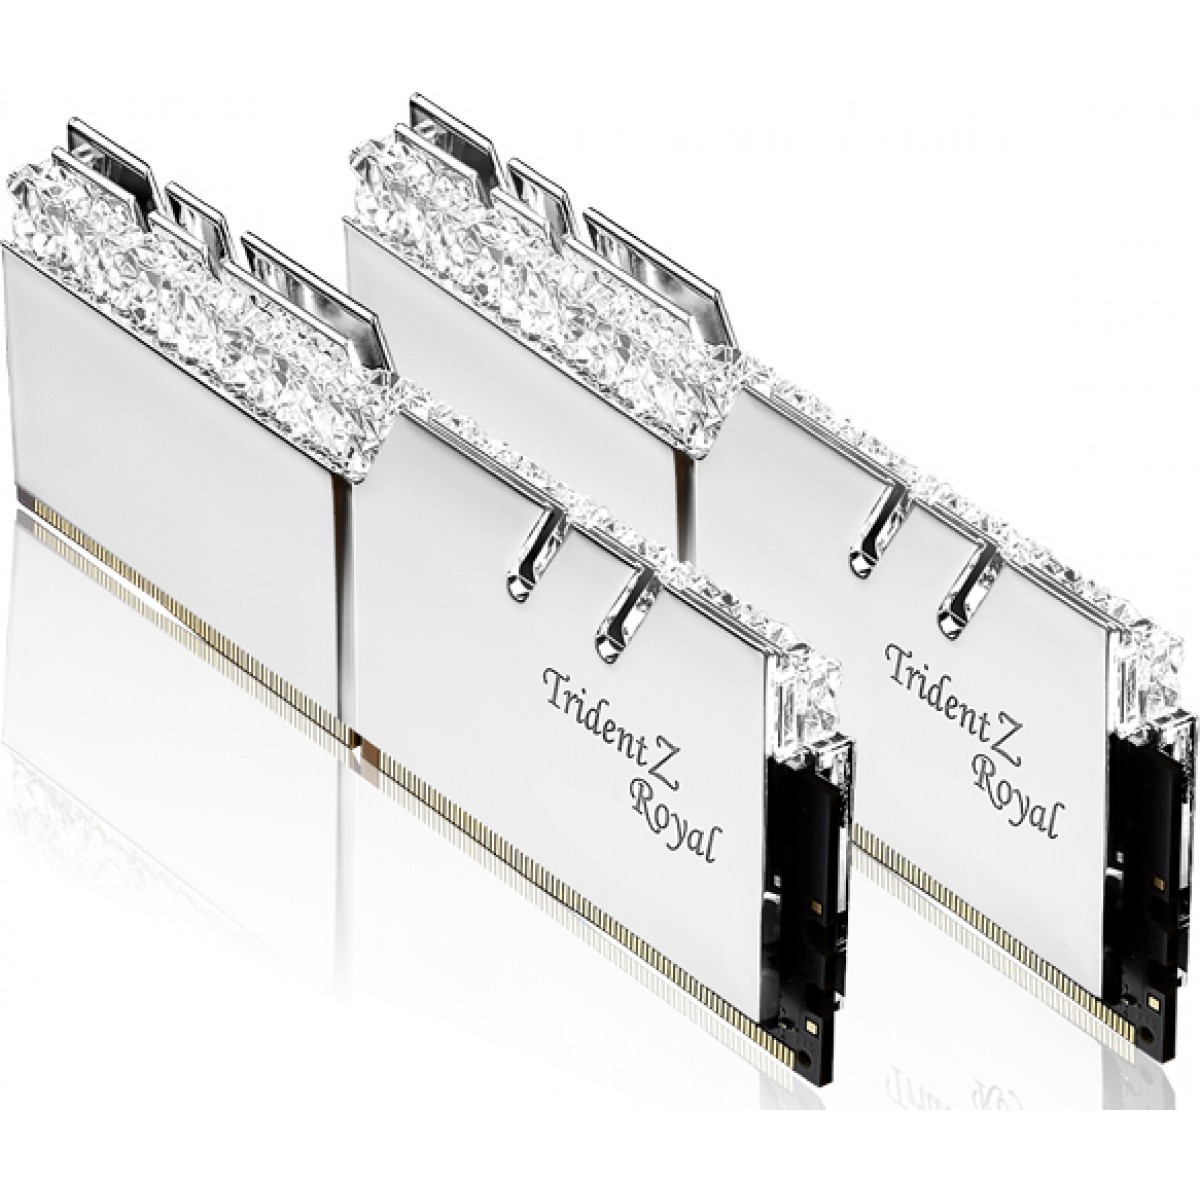 Memória DDR4 G.Skill Trident Z Royal, 16GB (2X8GB) 3200MHz, F4-3200C16D-16GTRS